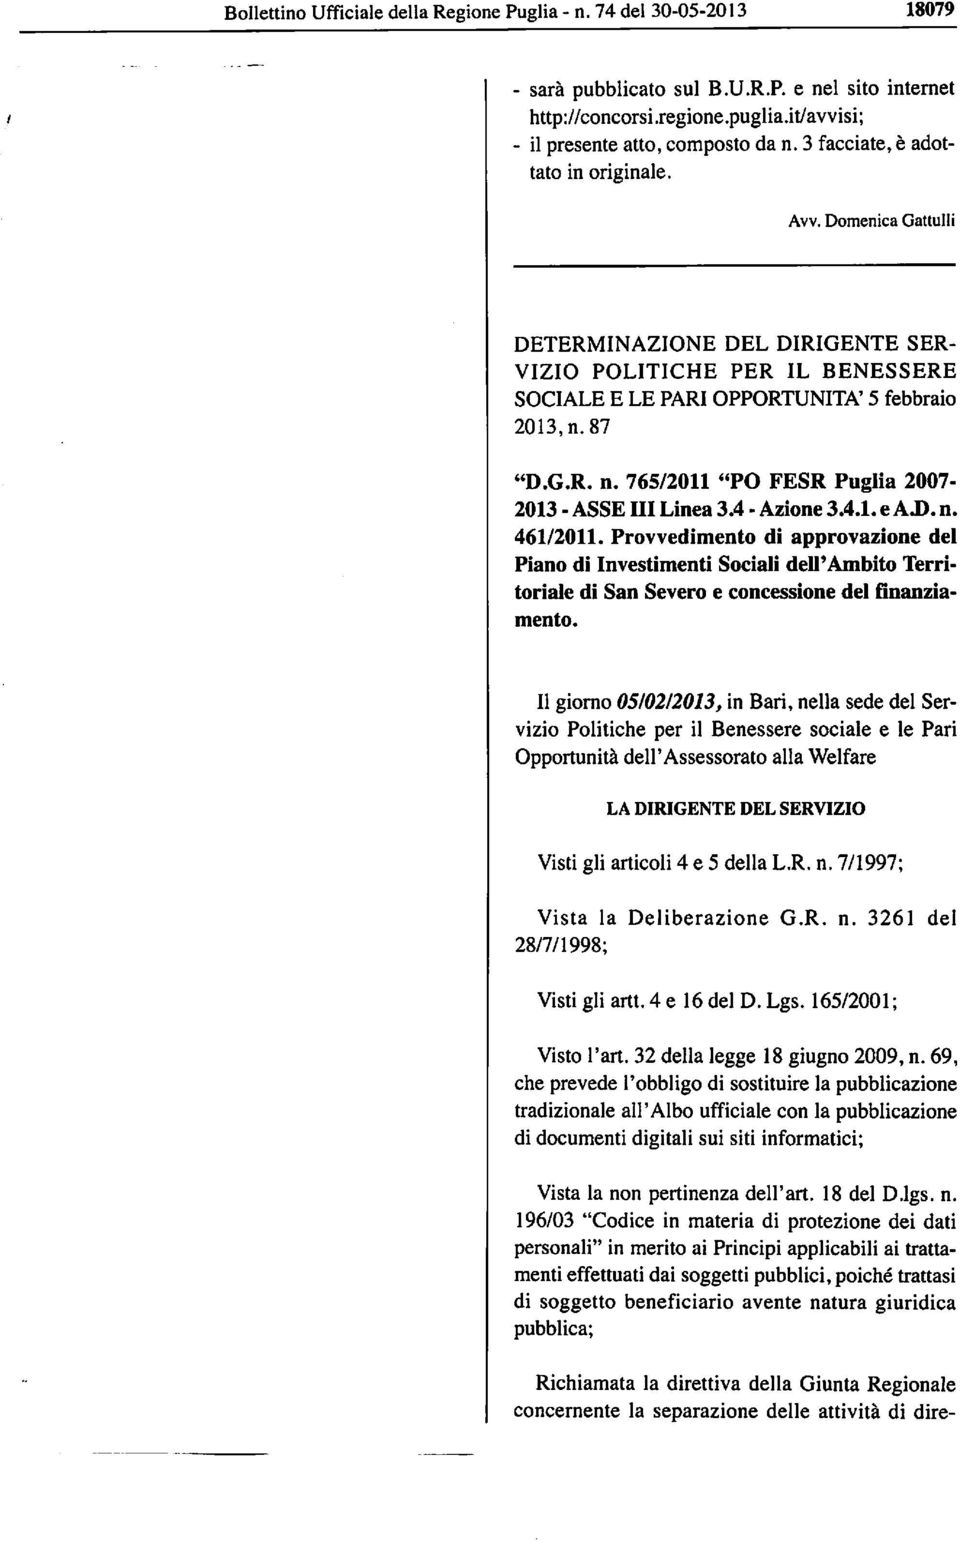 765/2011 "PO FESR Puglia 2007-2013 - ASSE III Linea 3.4 - Azione 3.4.1. e A.D. n. 461/2011.